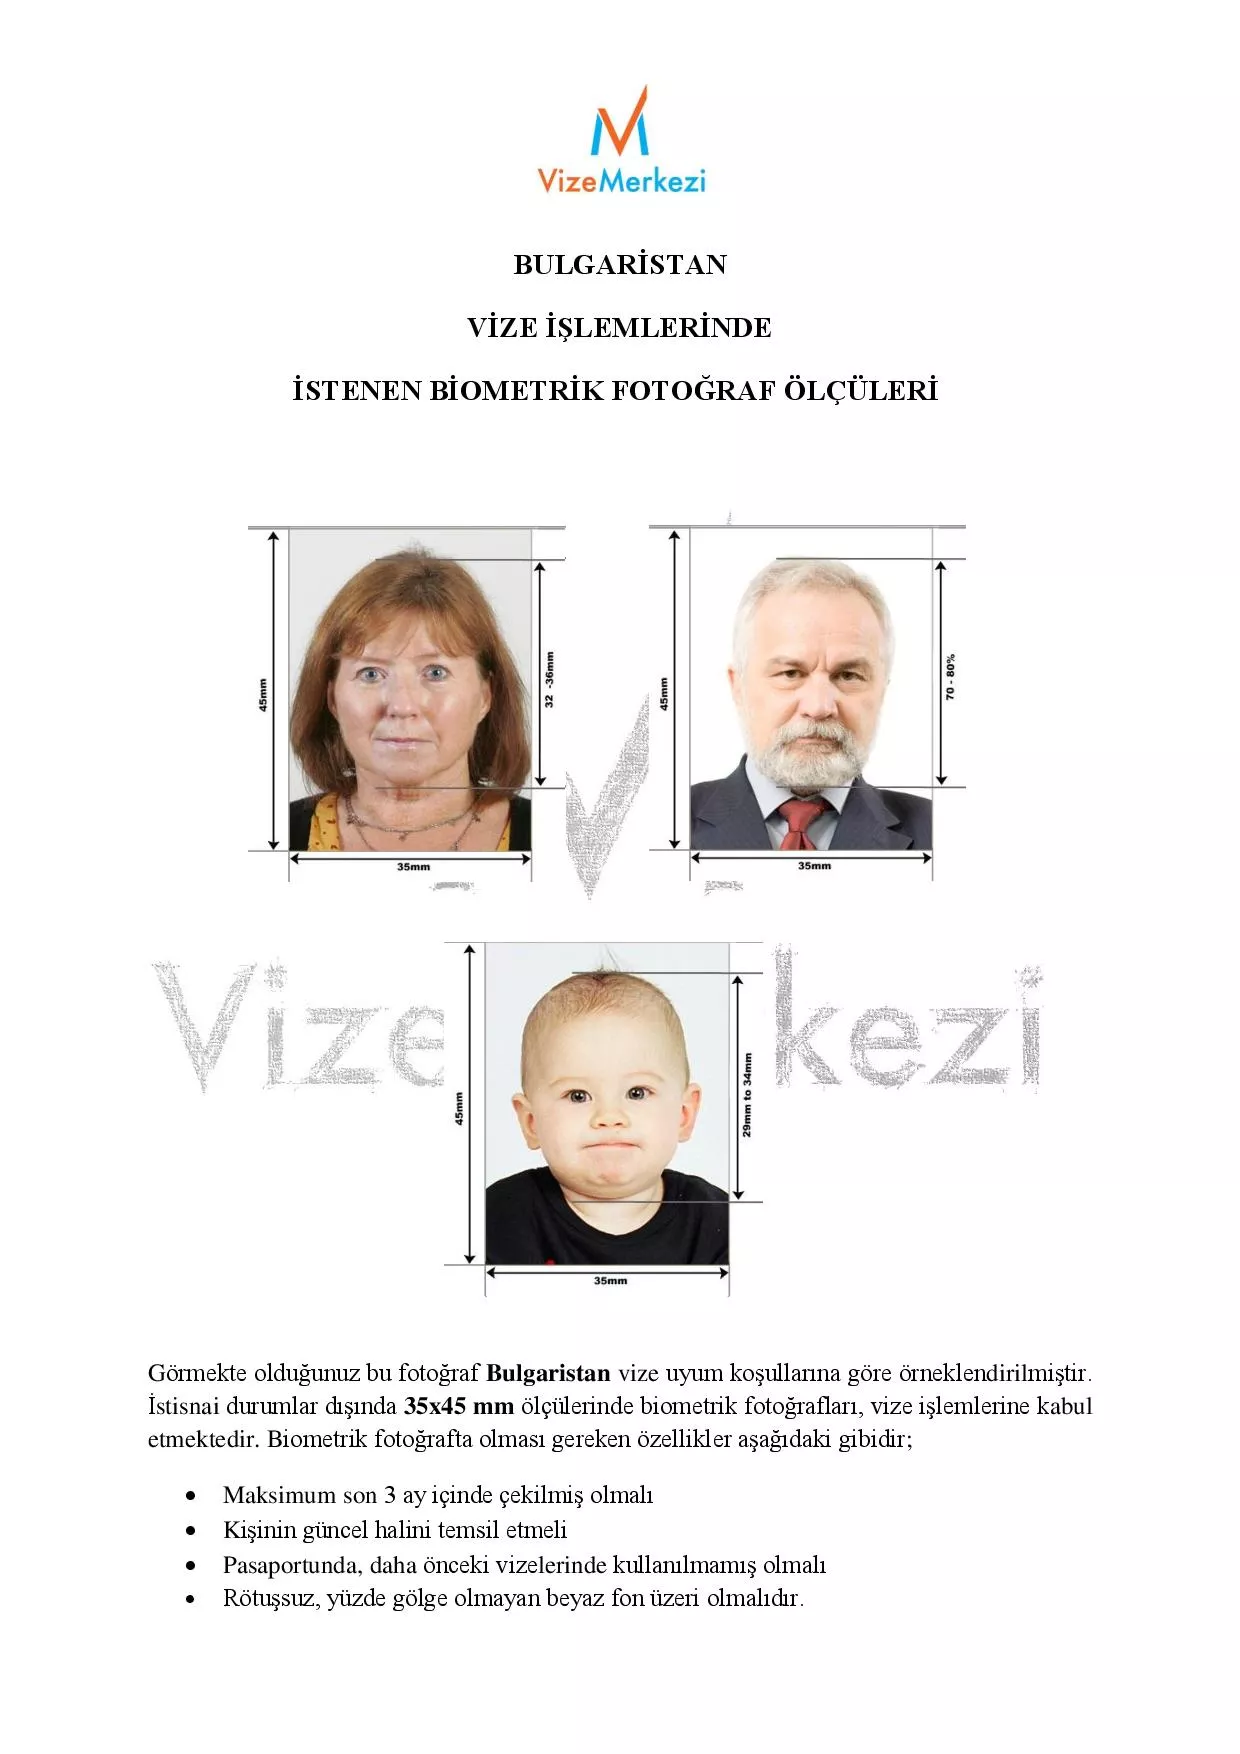 Bulgaristan vizesi fotoğraf ölçüleri